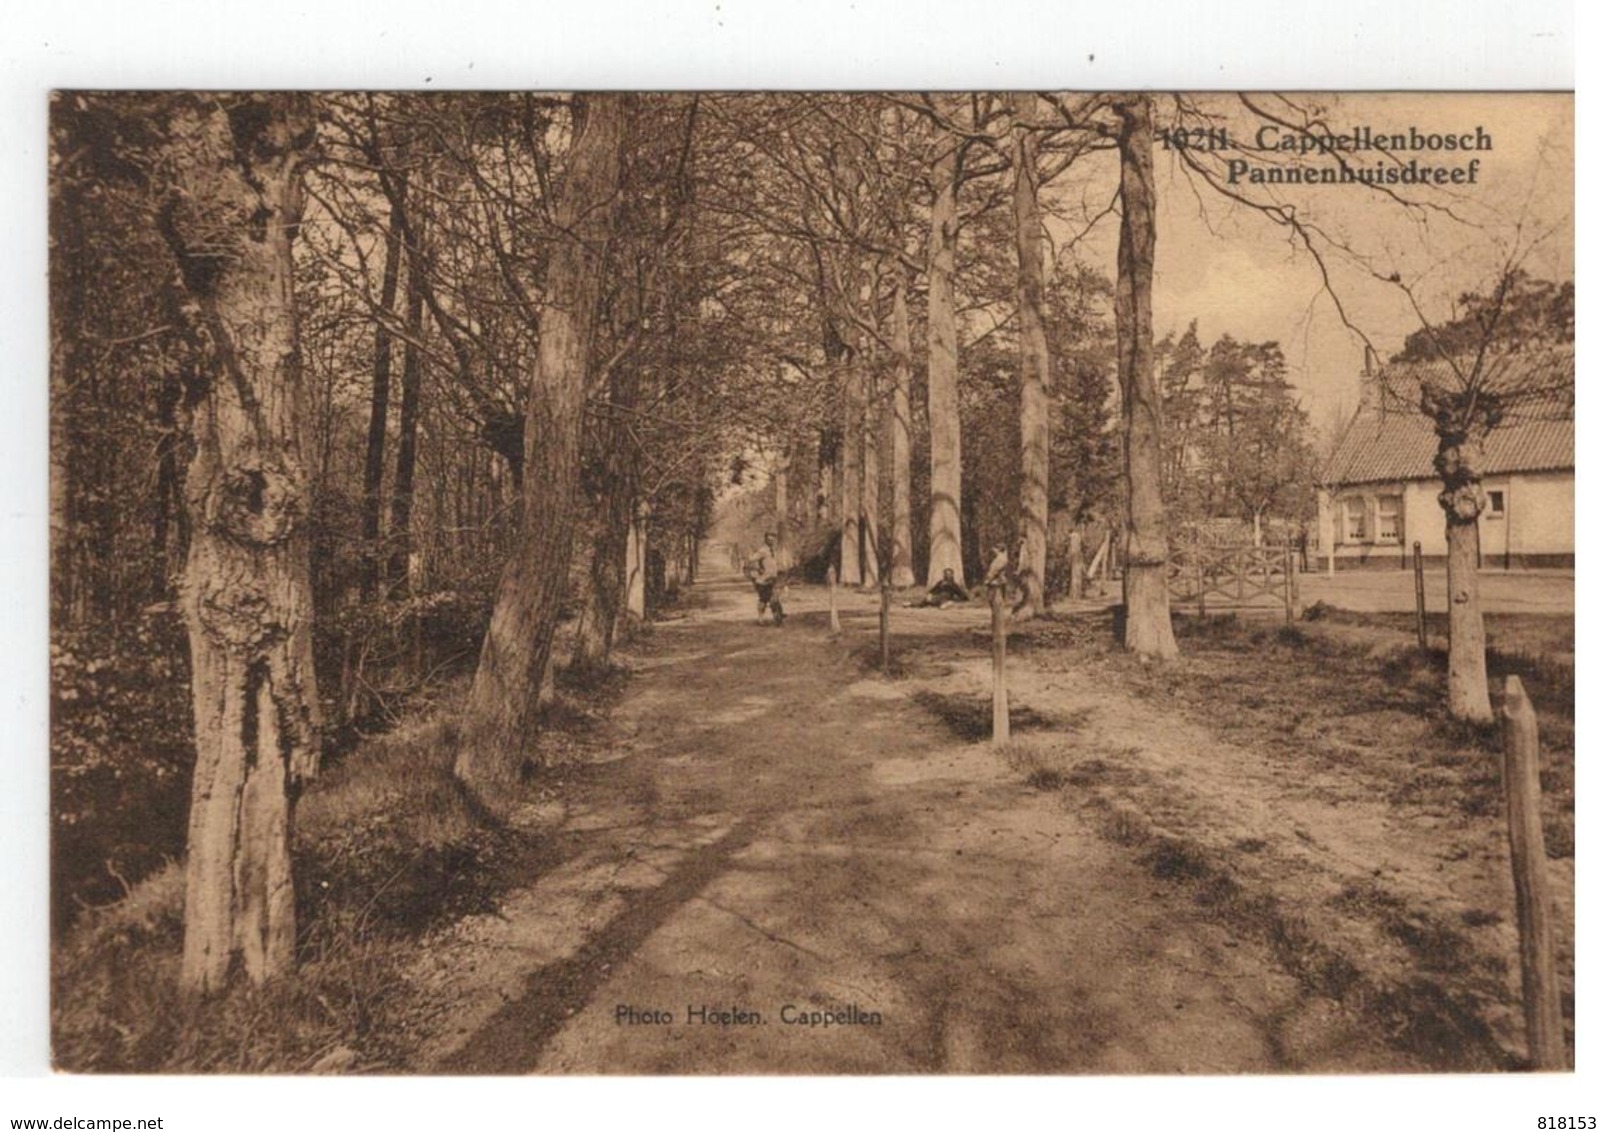 Kapellen 10211. Cappellenbosch Pannenhuisdreef  Photo Hoelen. Cappellen 1929 - Kapellen